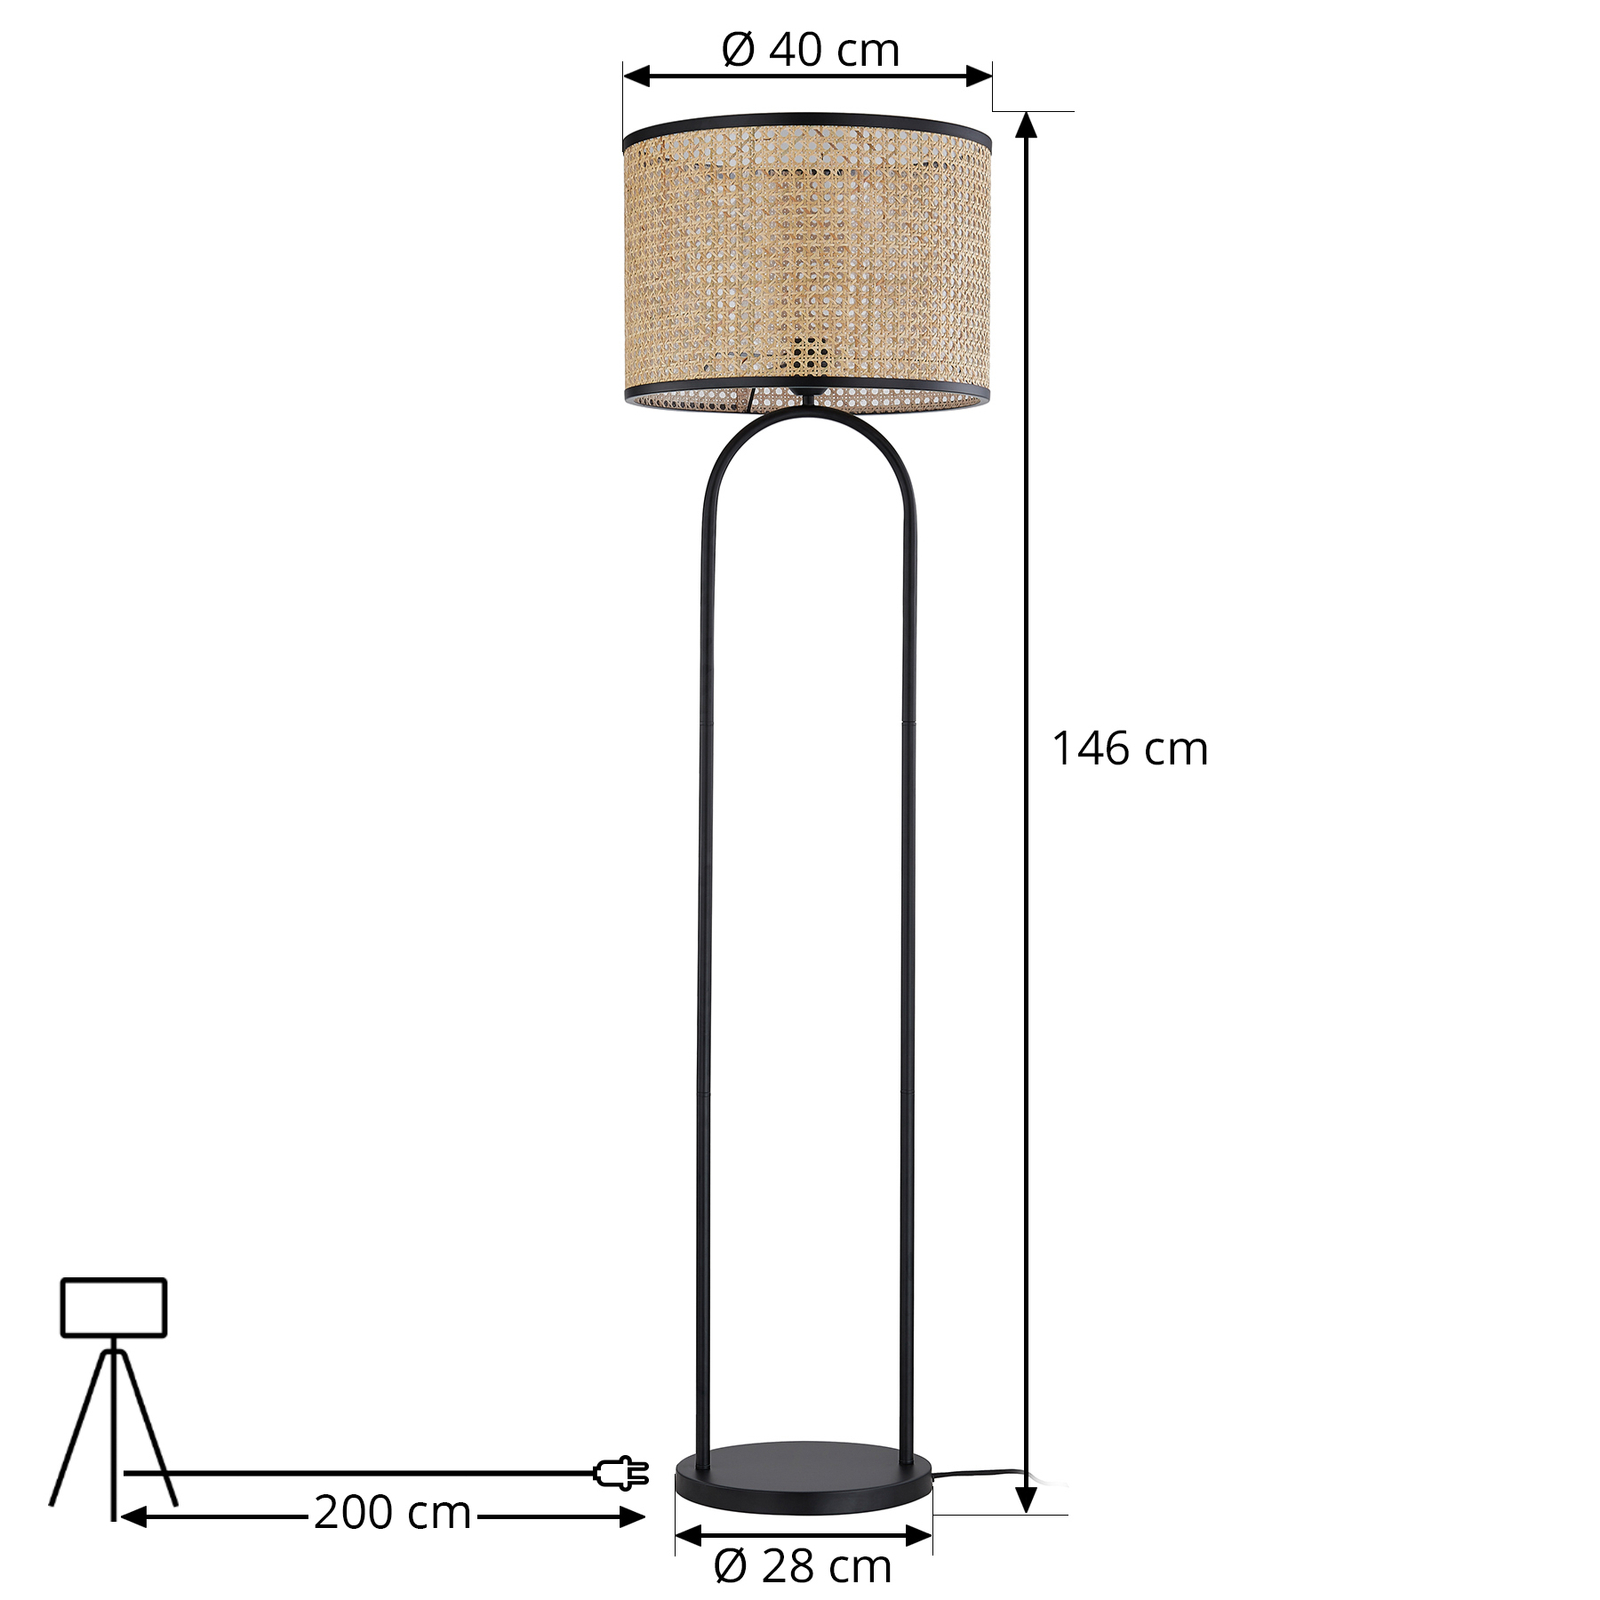 Stojací lampa Lindby Yaelle, výška 146 cm, ratan, černá, E27